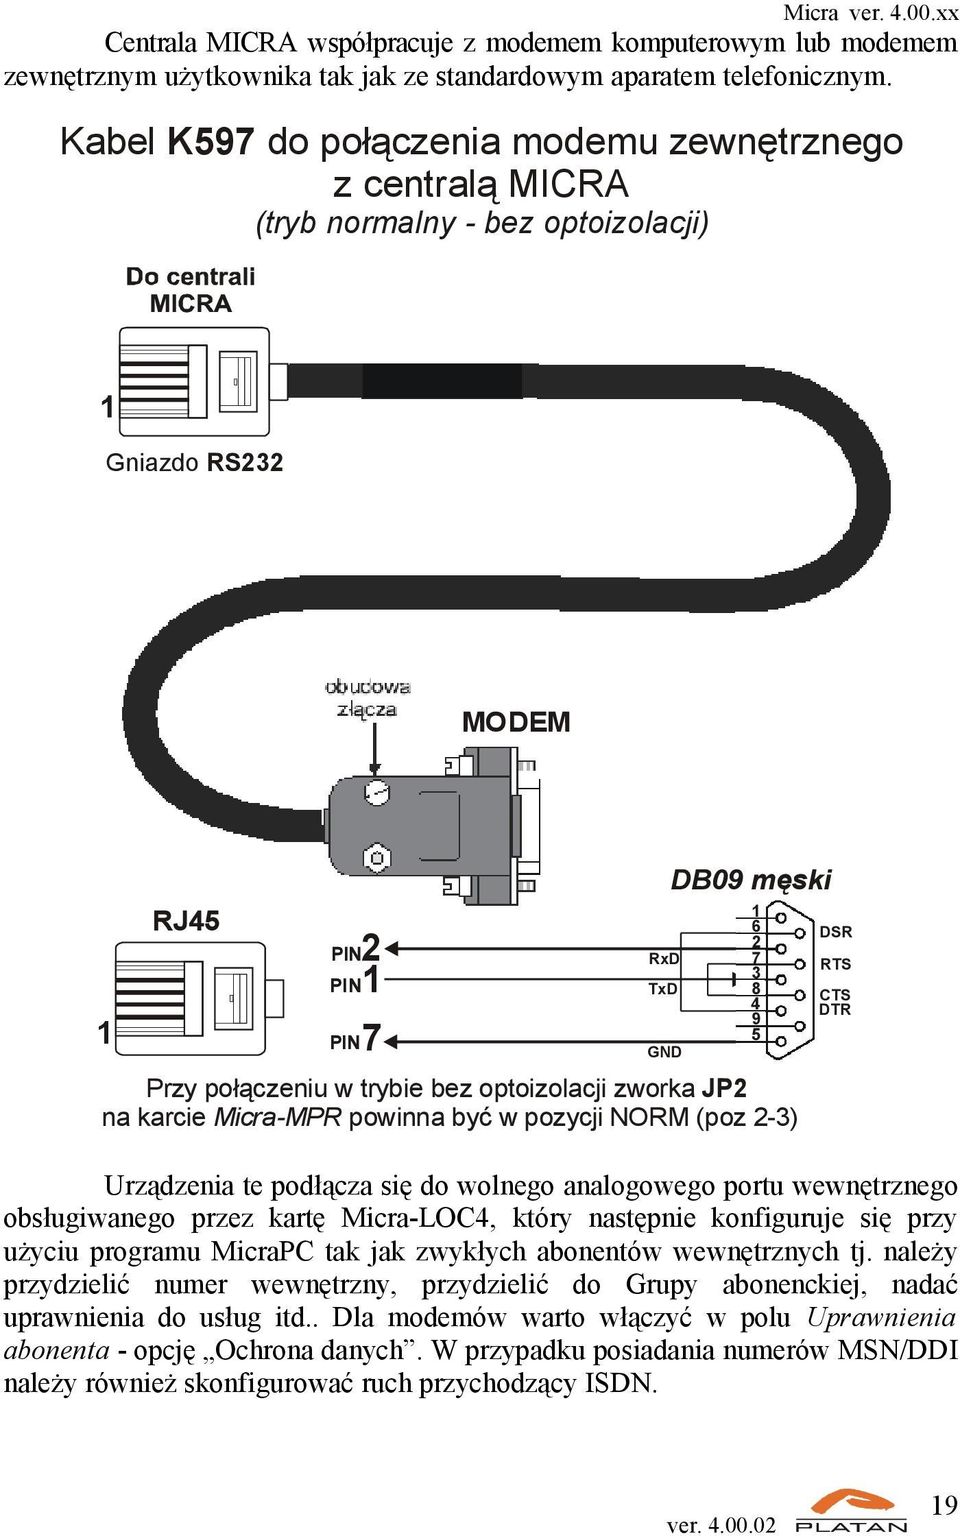 Przy połączeniu w trybie bez optoizolacji zworka JP2 na karcie Micra-MPR powinna być w pozycji NORM (poz 2-3) Urządzenia te podłącza się do wolnego analogowego portu wewnętrznego obsługiwanego przez